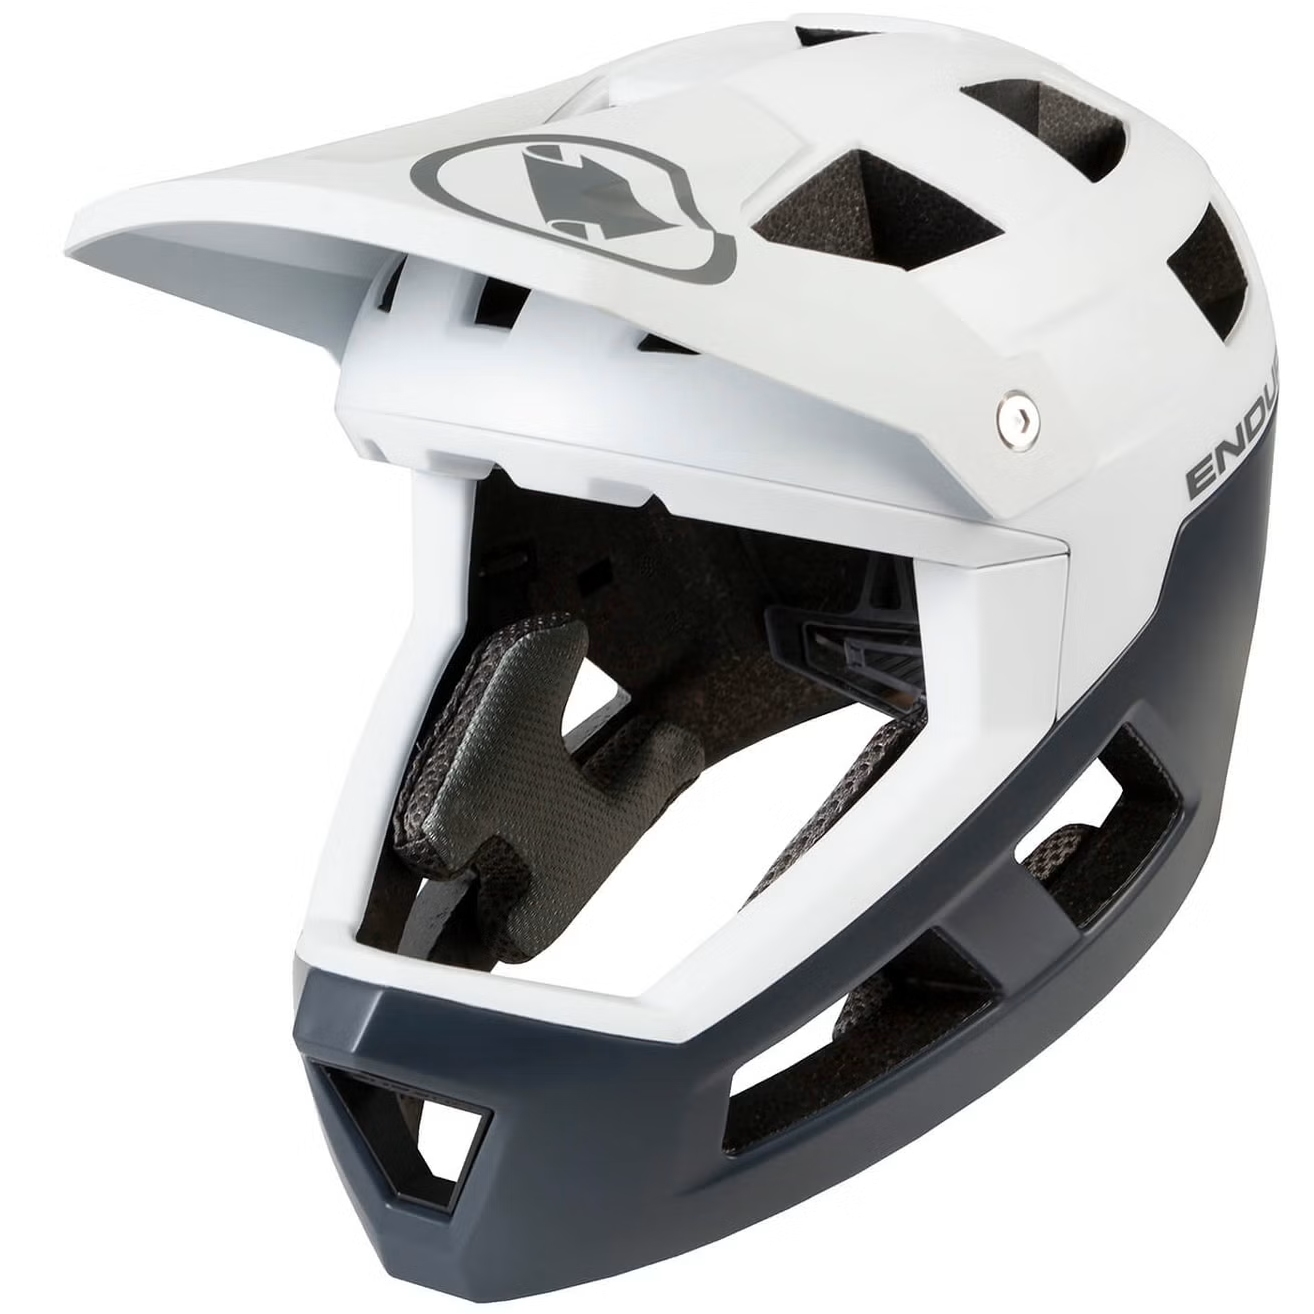 Produktbild von Endura SingleTrack Full Face Helm - weiß